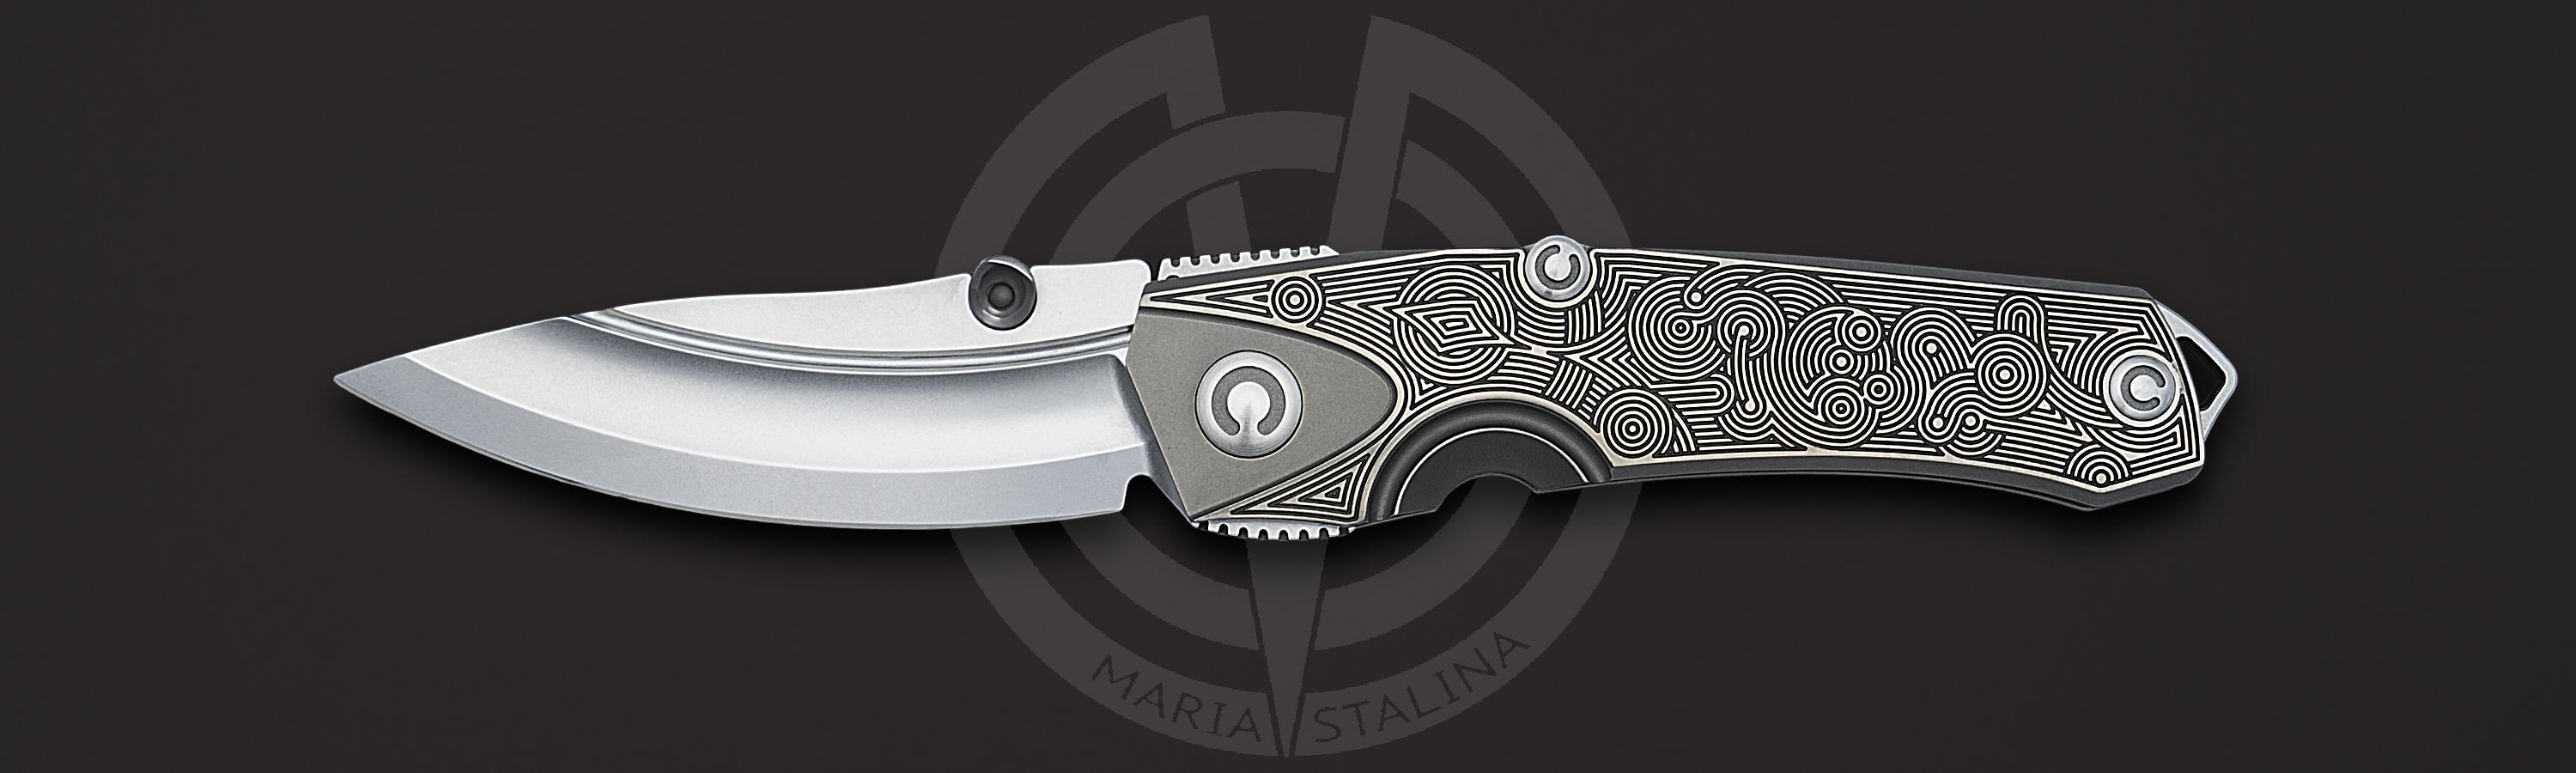 Rhino TA 3/5 knife